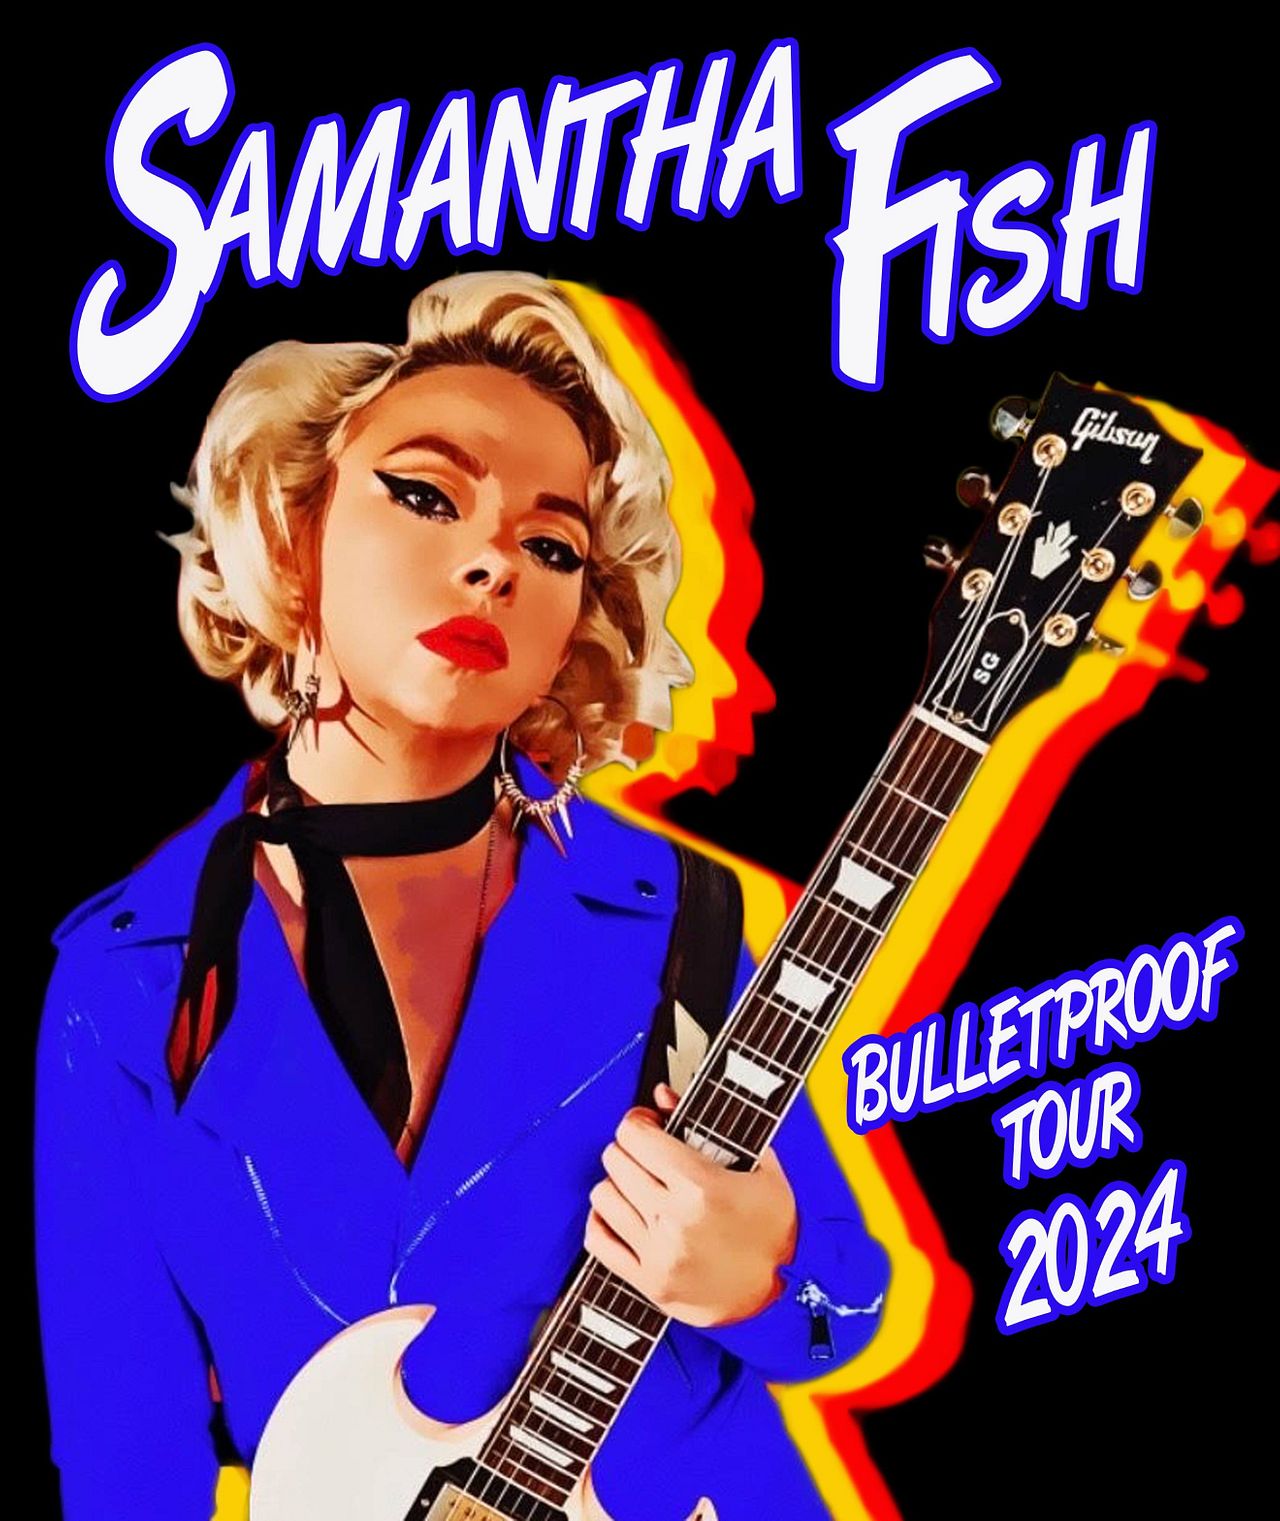 Samantha Fish Bulletproof Tour 2024 Tickets at Asbury Hall in Buffalo